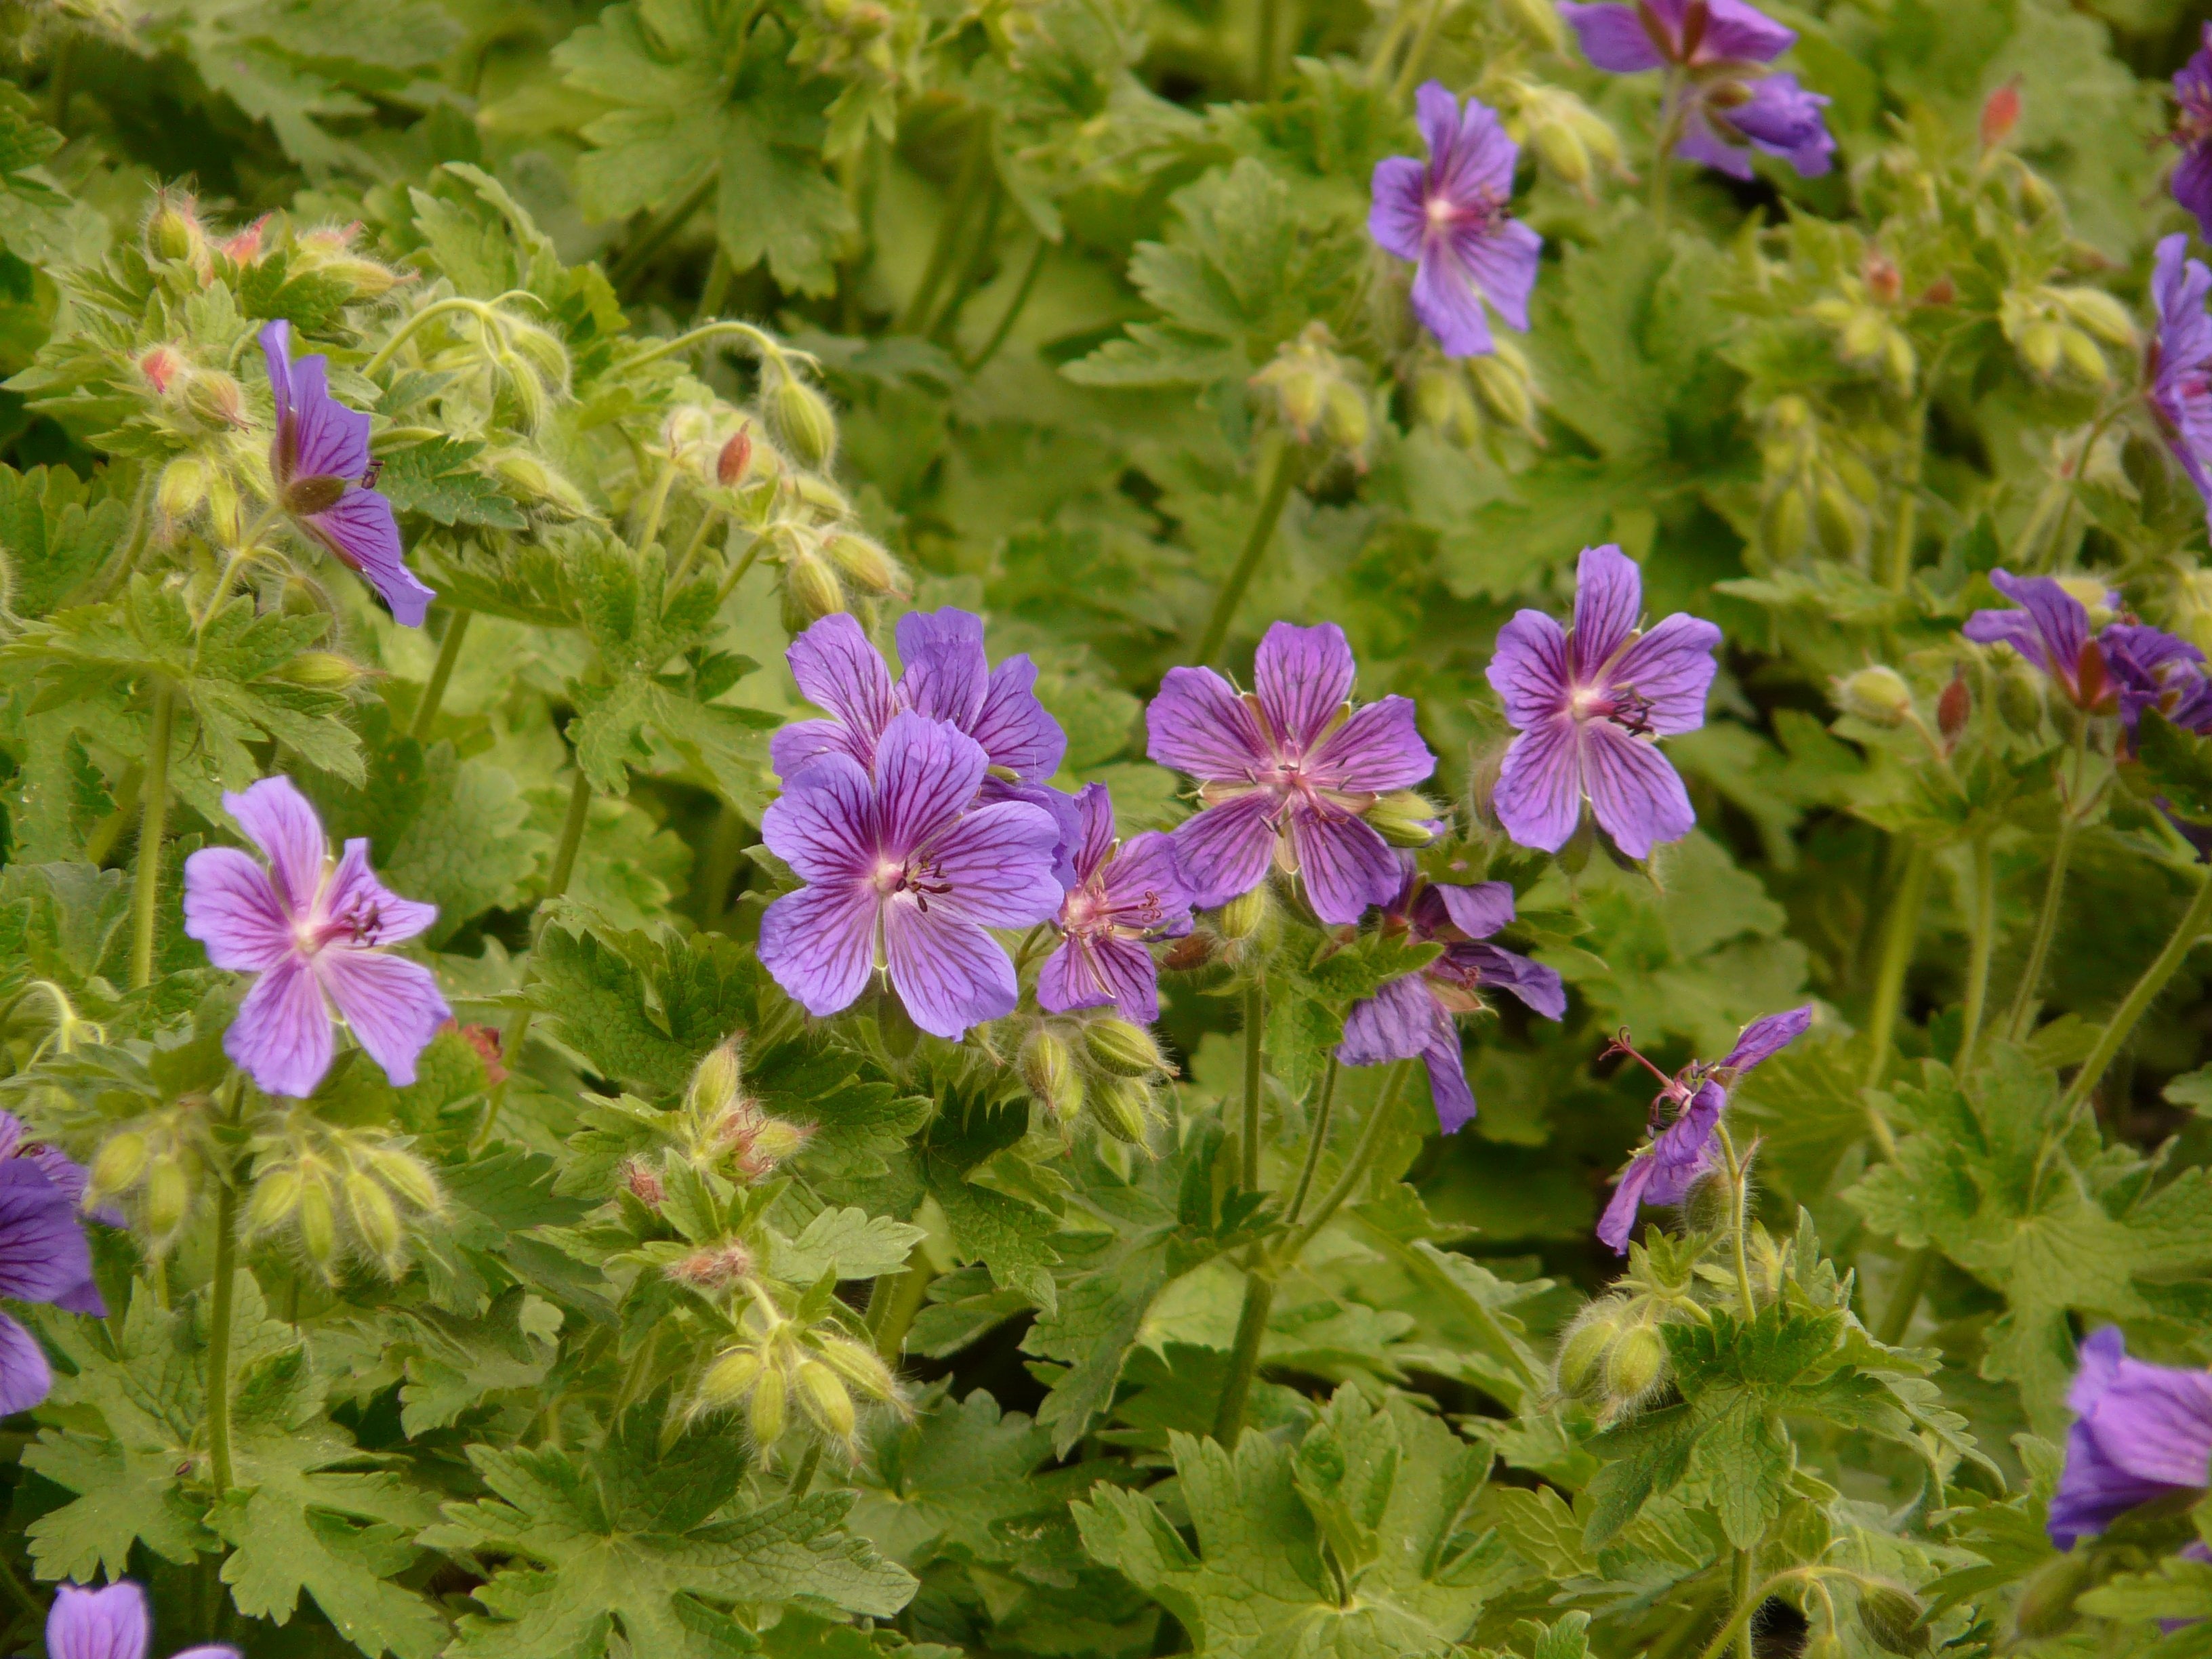 purple 5 petaled flower field